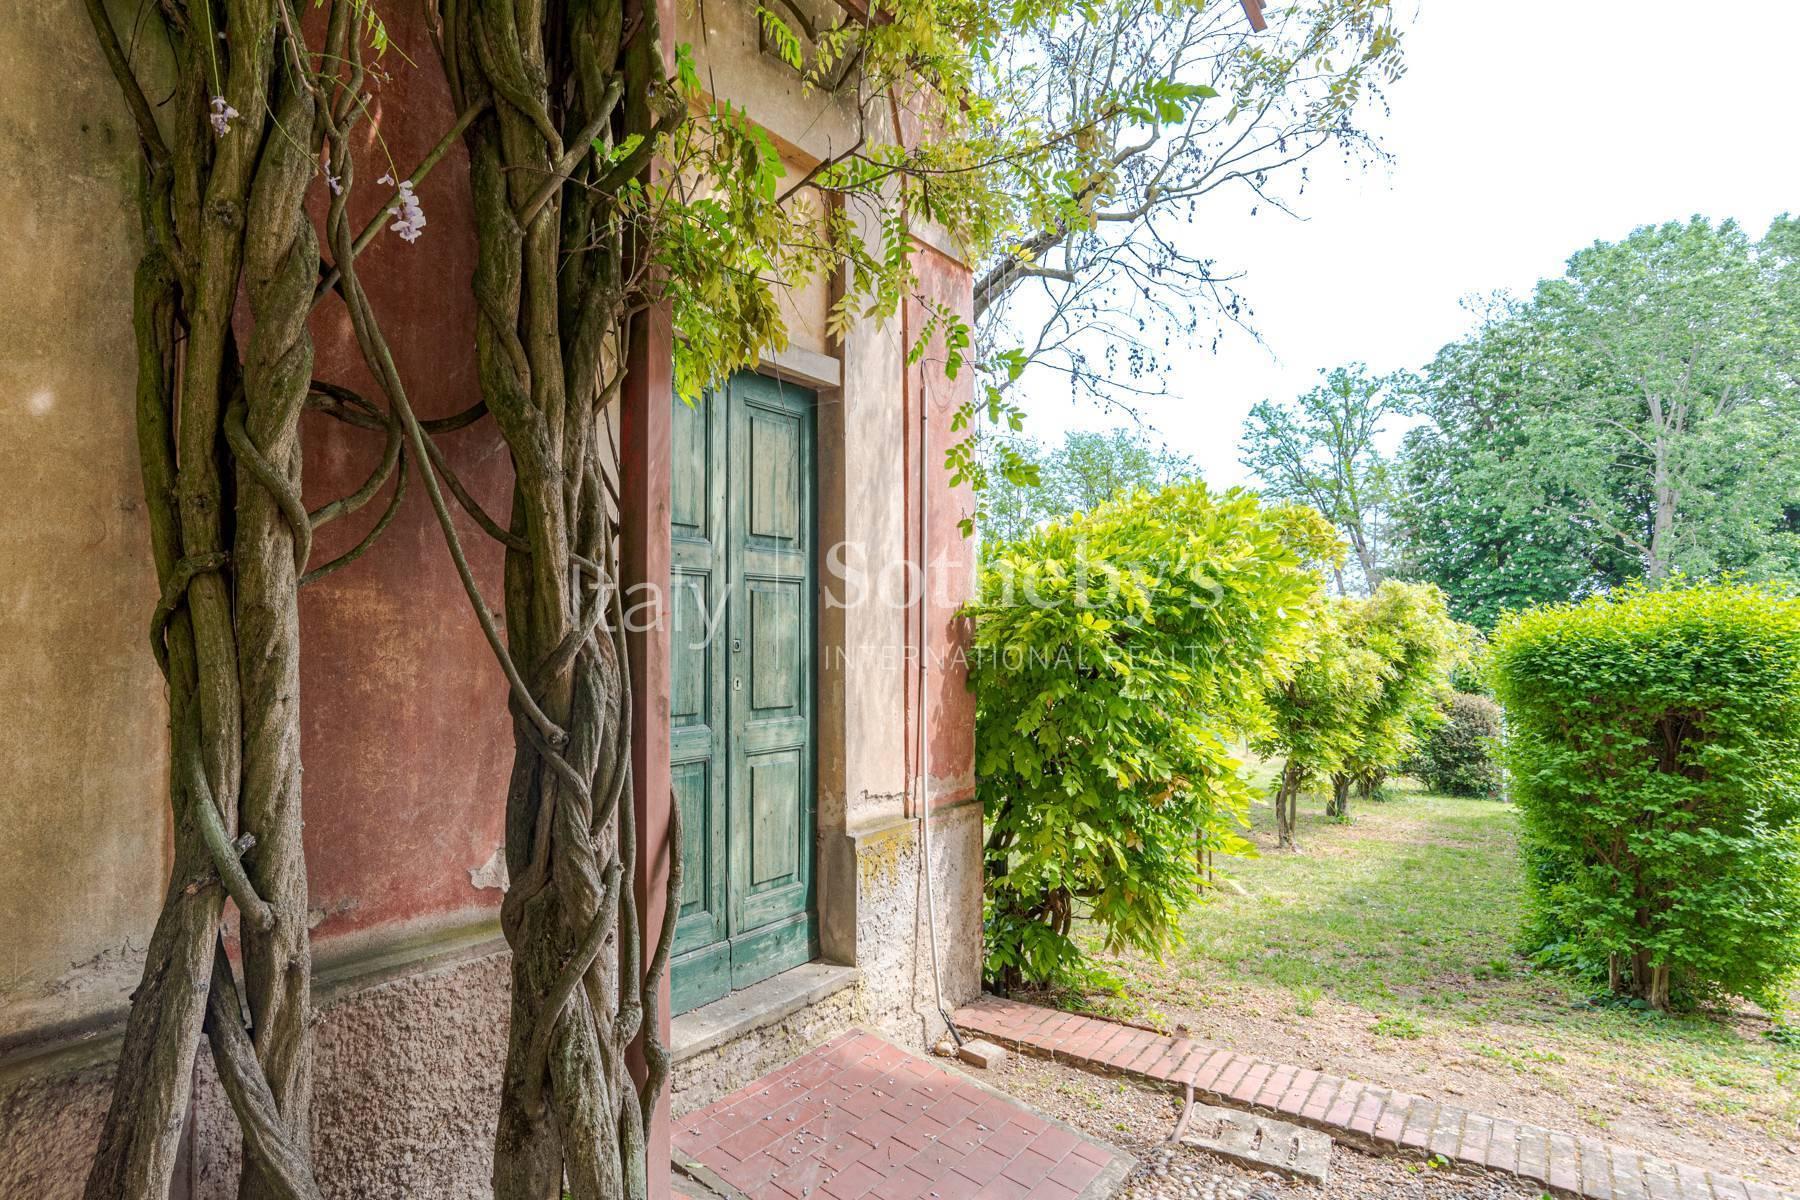 Cascina Bella - 18th century villa with park in Oltrepo' Pavese - 19